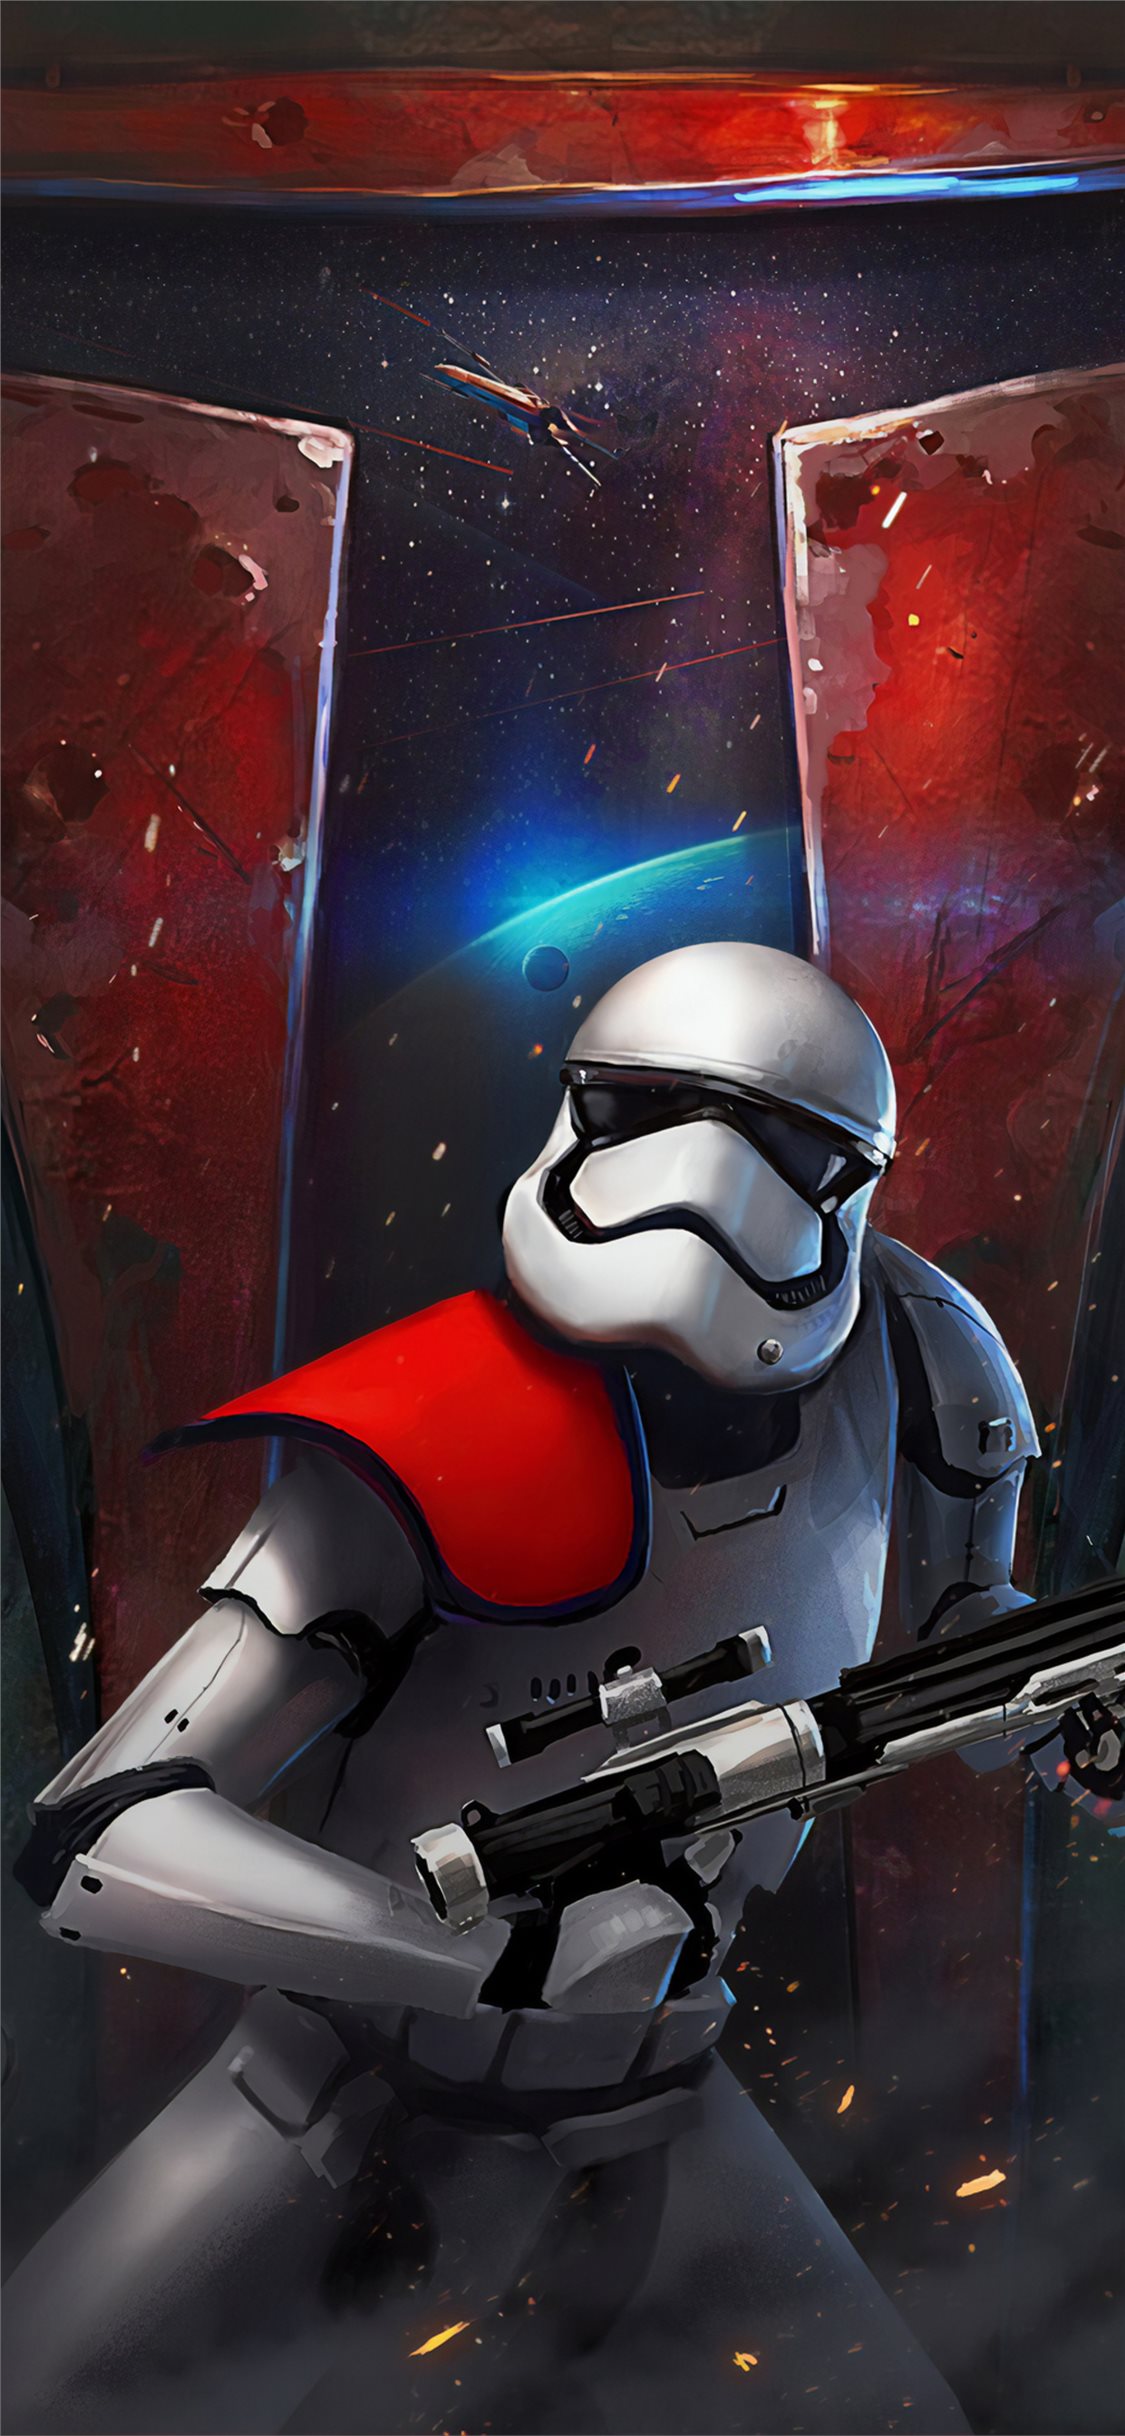 45+] Star Wars Trooper Wallpaper - WallpaperSafari